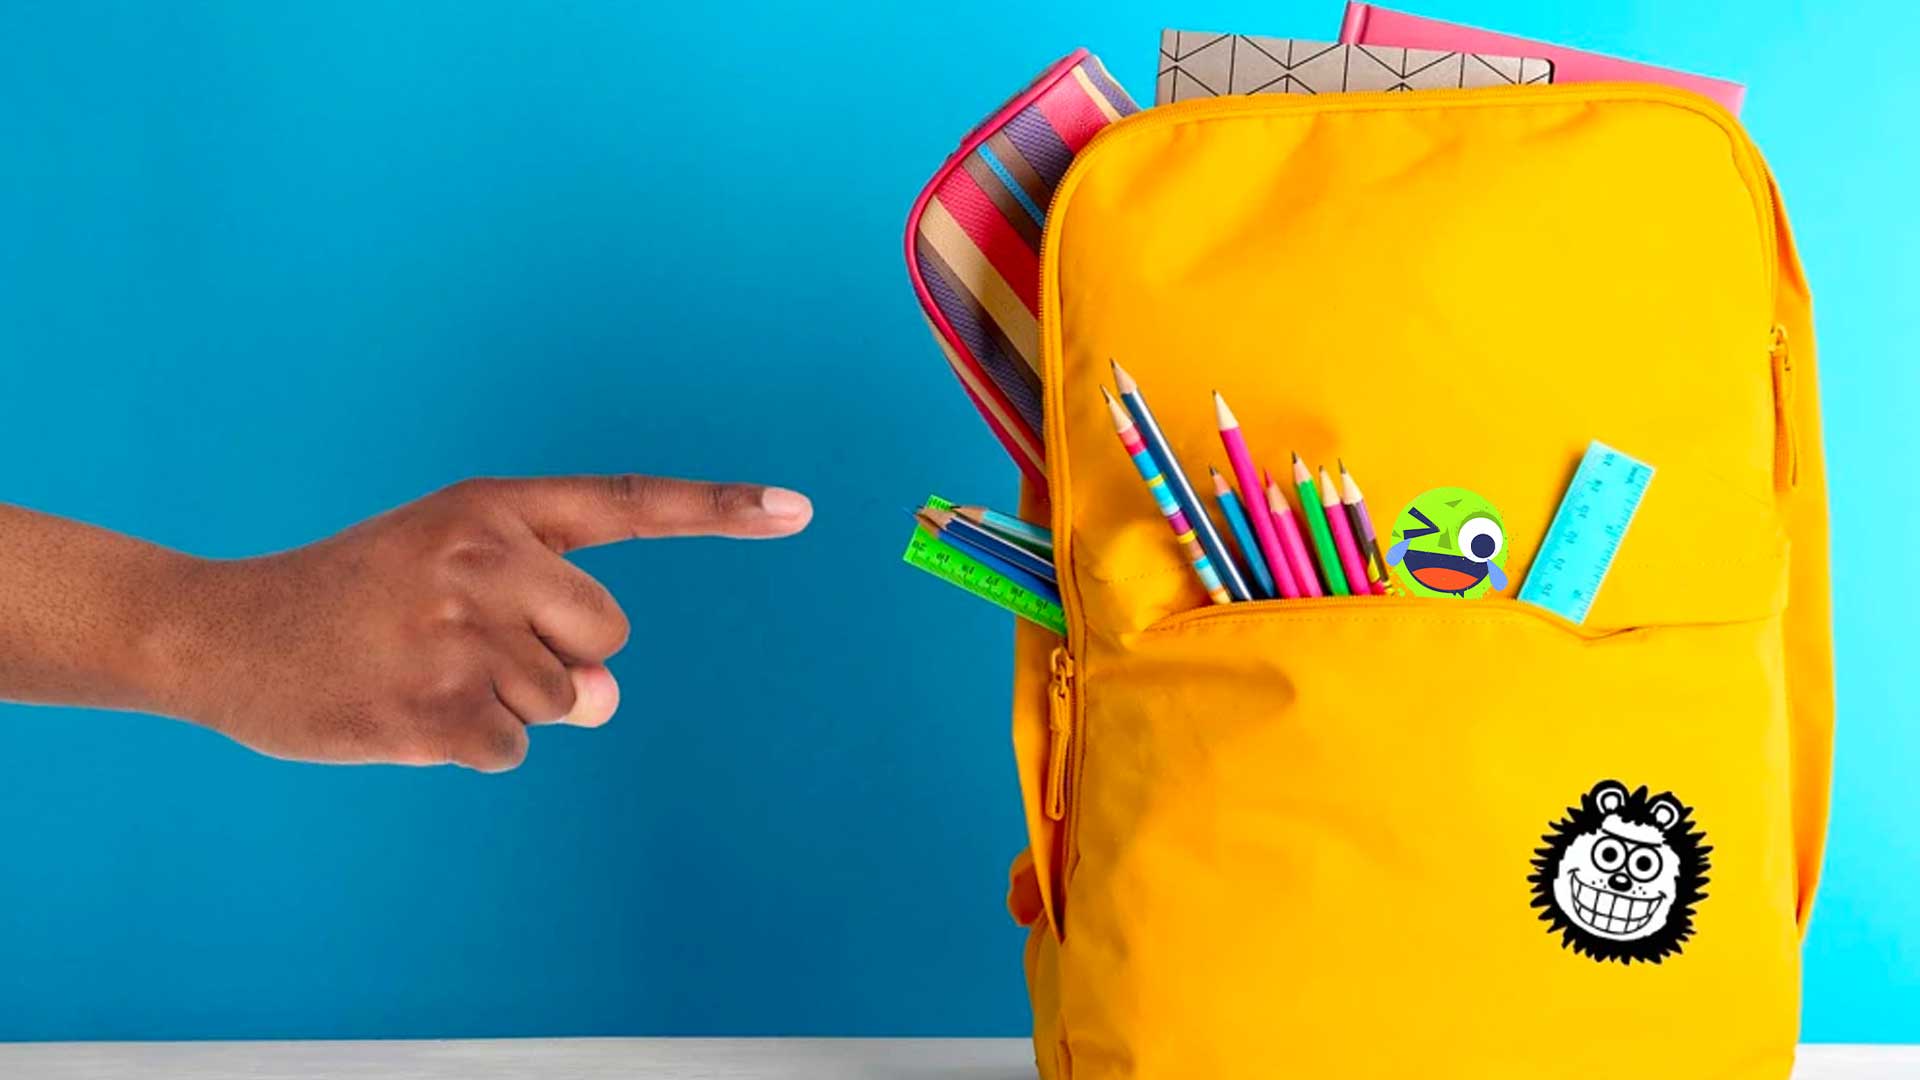 A school bag